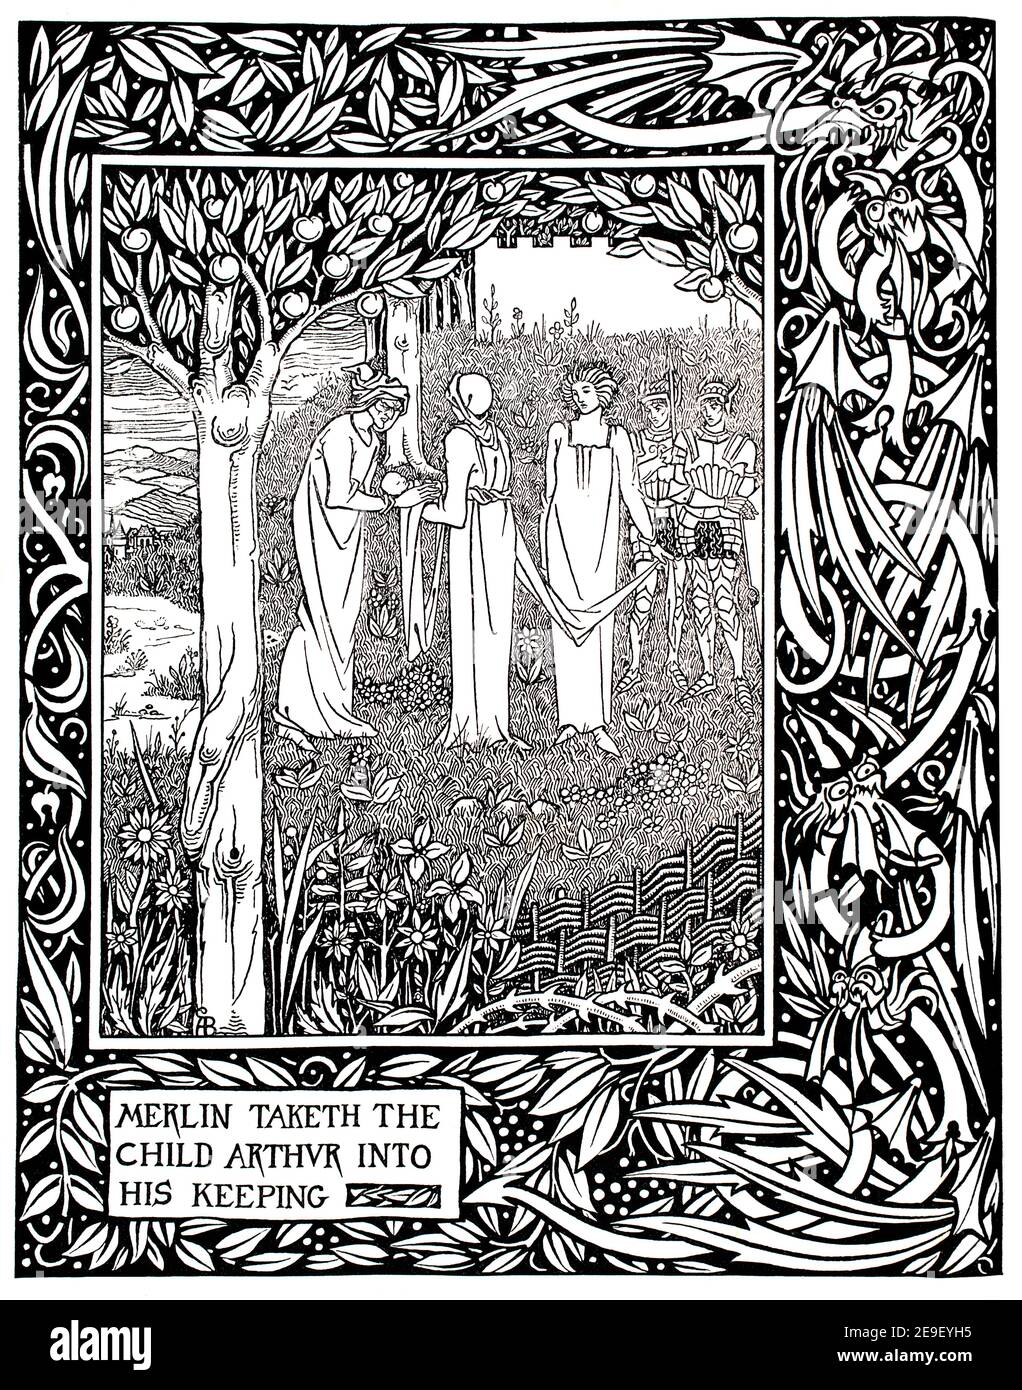 Merlin nimmt das Kind Arthur mit in seine Haltung, aus Dent & Co 1892 Thomas Malorys Morte d’Arthur, Zeichnung in Linie und Wash Design von Aubrey Beard Stockfoto